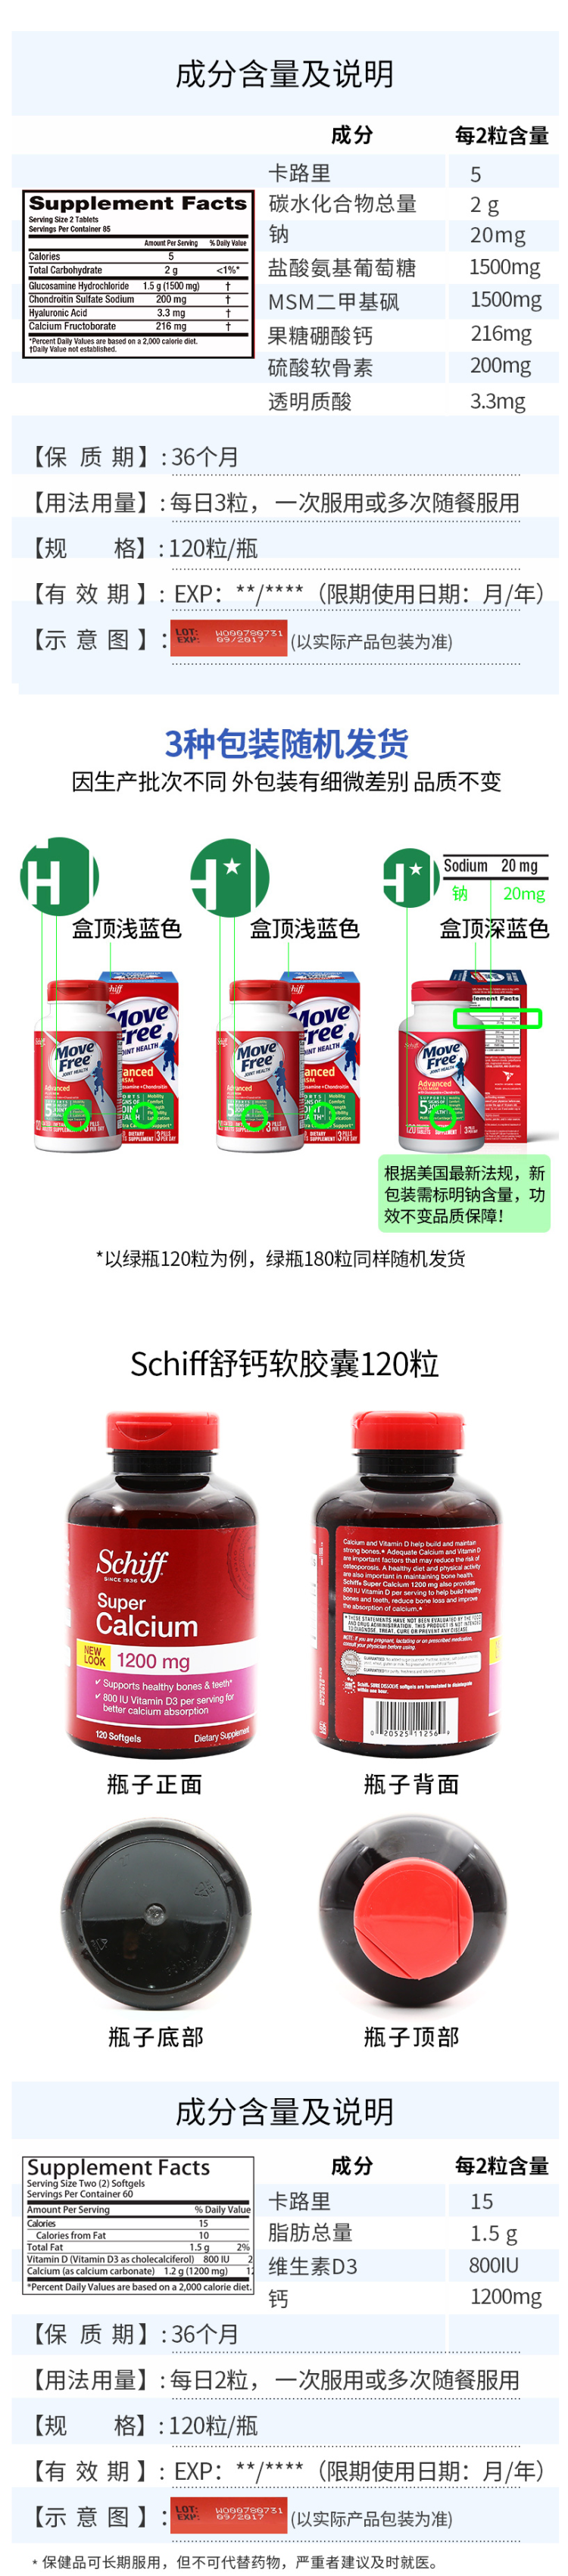 美产 Schiff MoveFree氨糖软骨素 绿瓶 120粒+液体钙软胶囊 120粒 图11